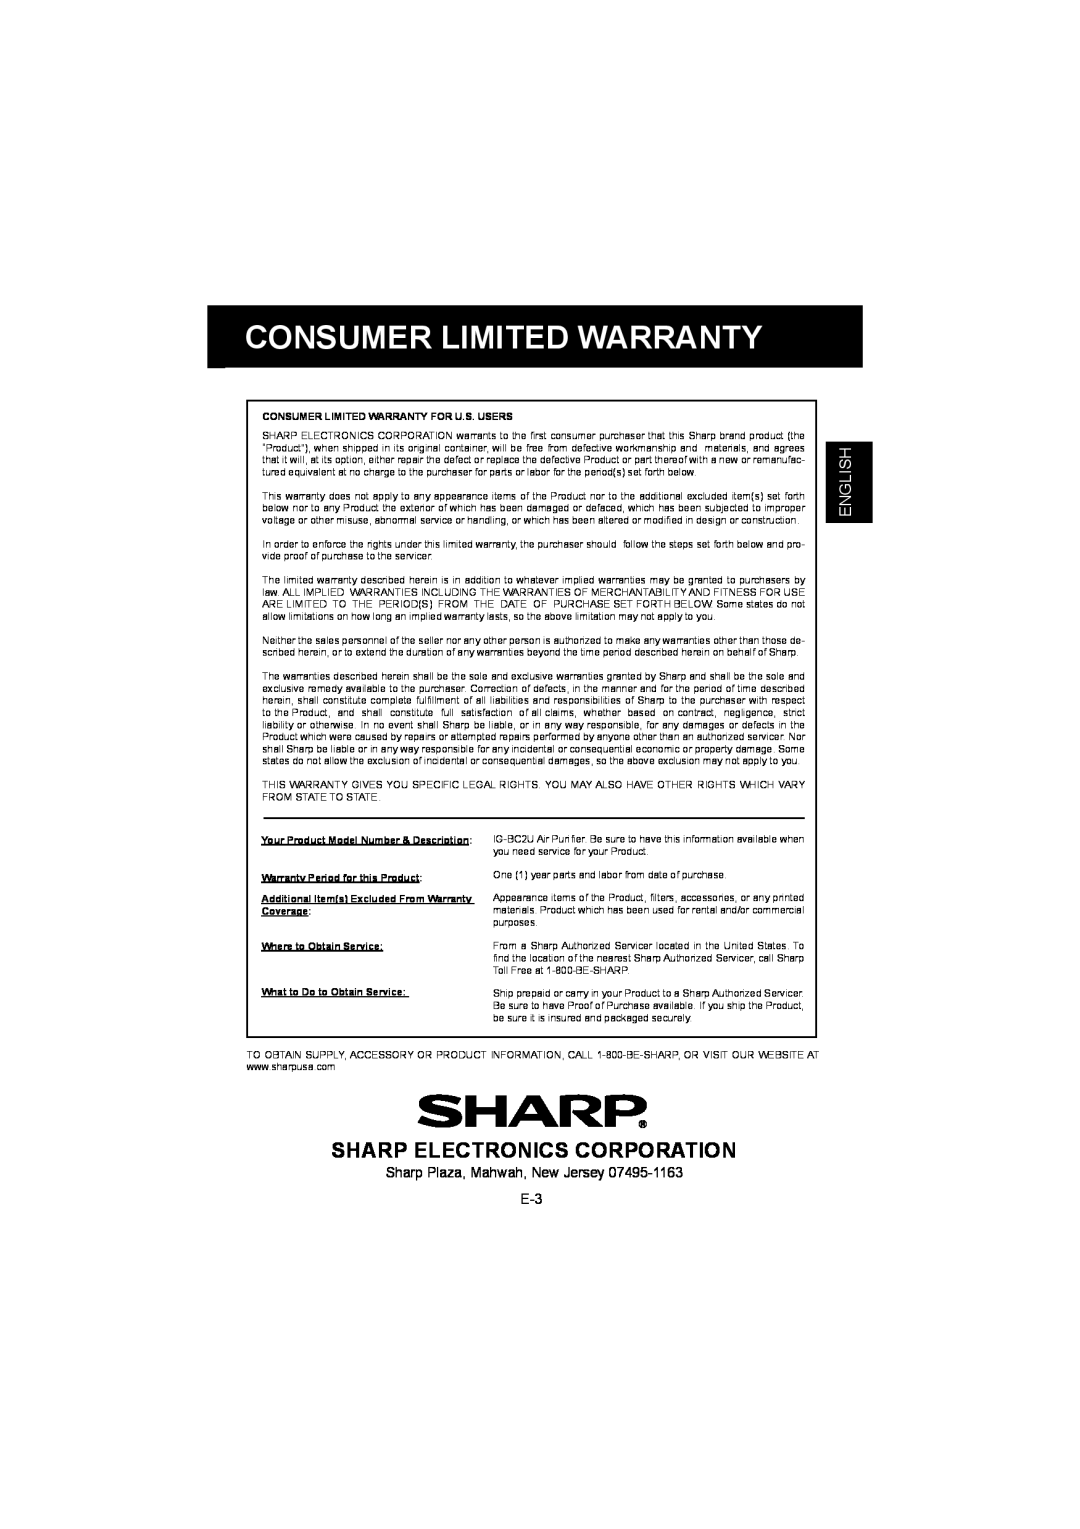 Sharp IG-BC2UB manuel dutilisation Sharp Electronics Corporation, English, Consumer Limited Warranty For U.S. Users 